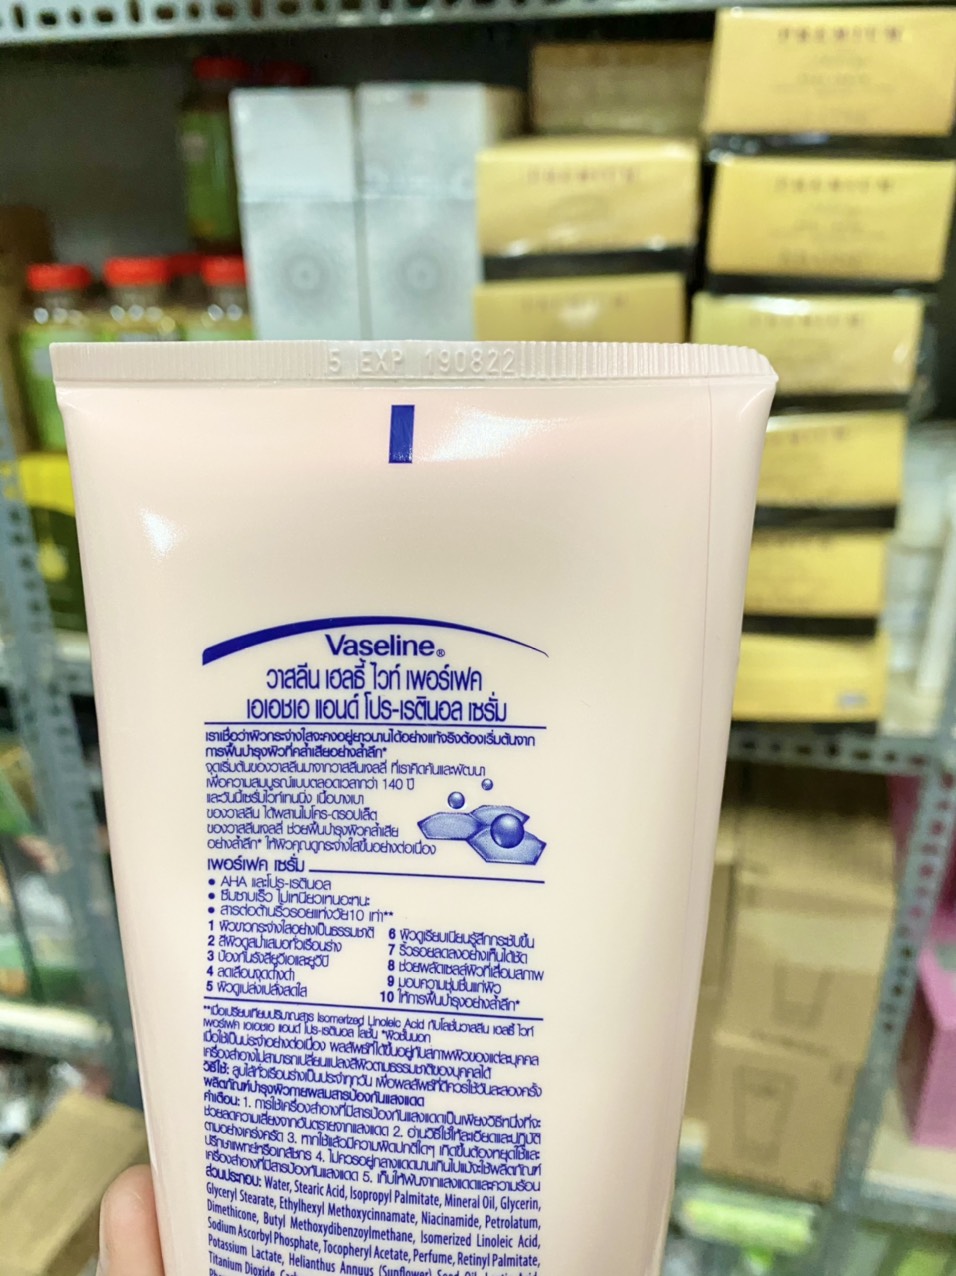 Sữa dưỡng thể Vaseline 10x Healthy White Perfect Serum Thái Lan chính hãng - 8851932314237